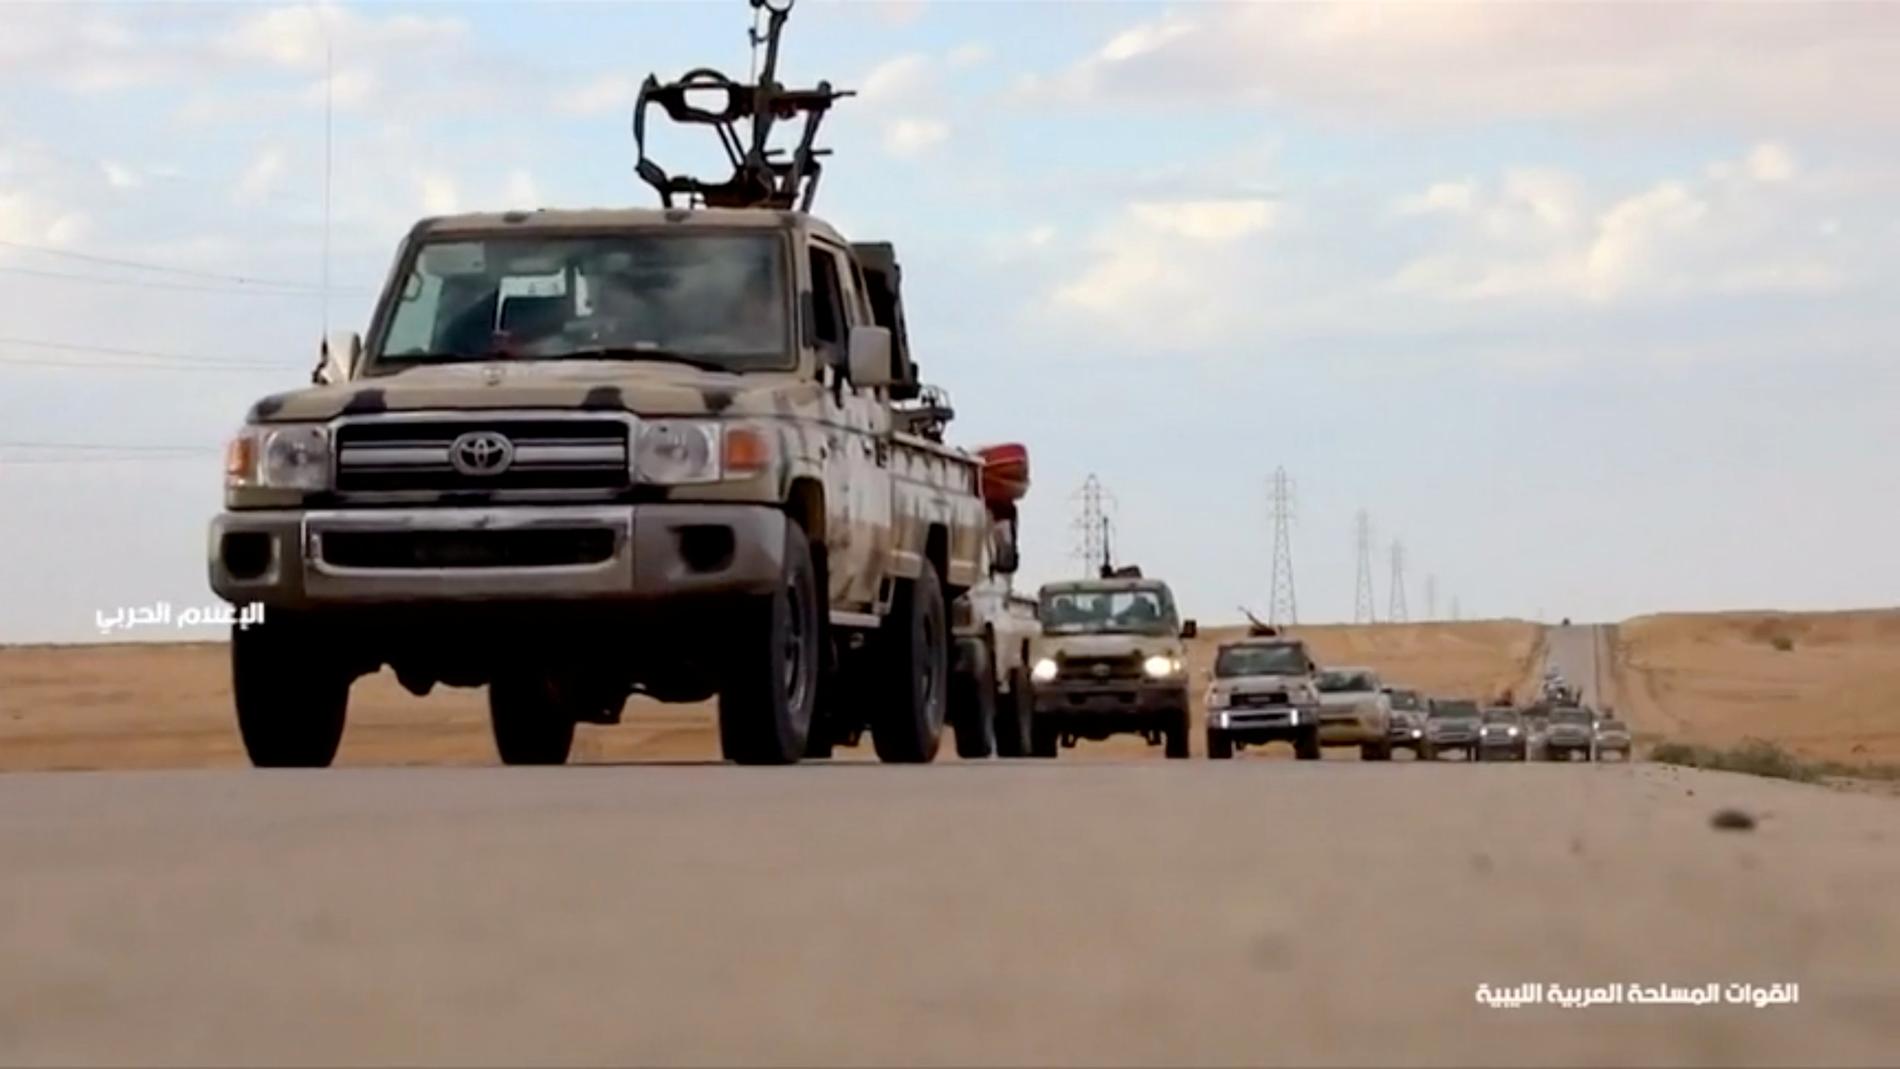 En stillbild från ett filmklipp från LNA, där militärt rustade fordon färdas i konvoj. Filmklippet publicerades före eldstriderna i Gharyan på onsdagen.